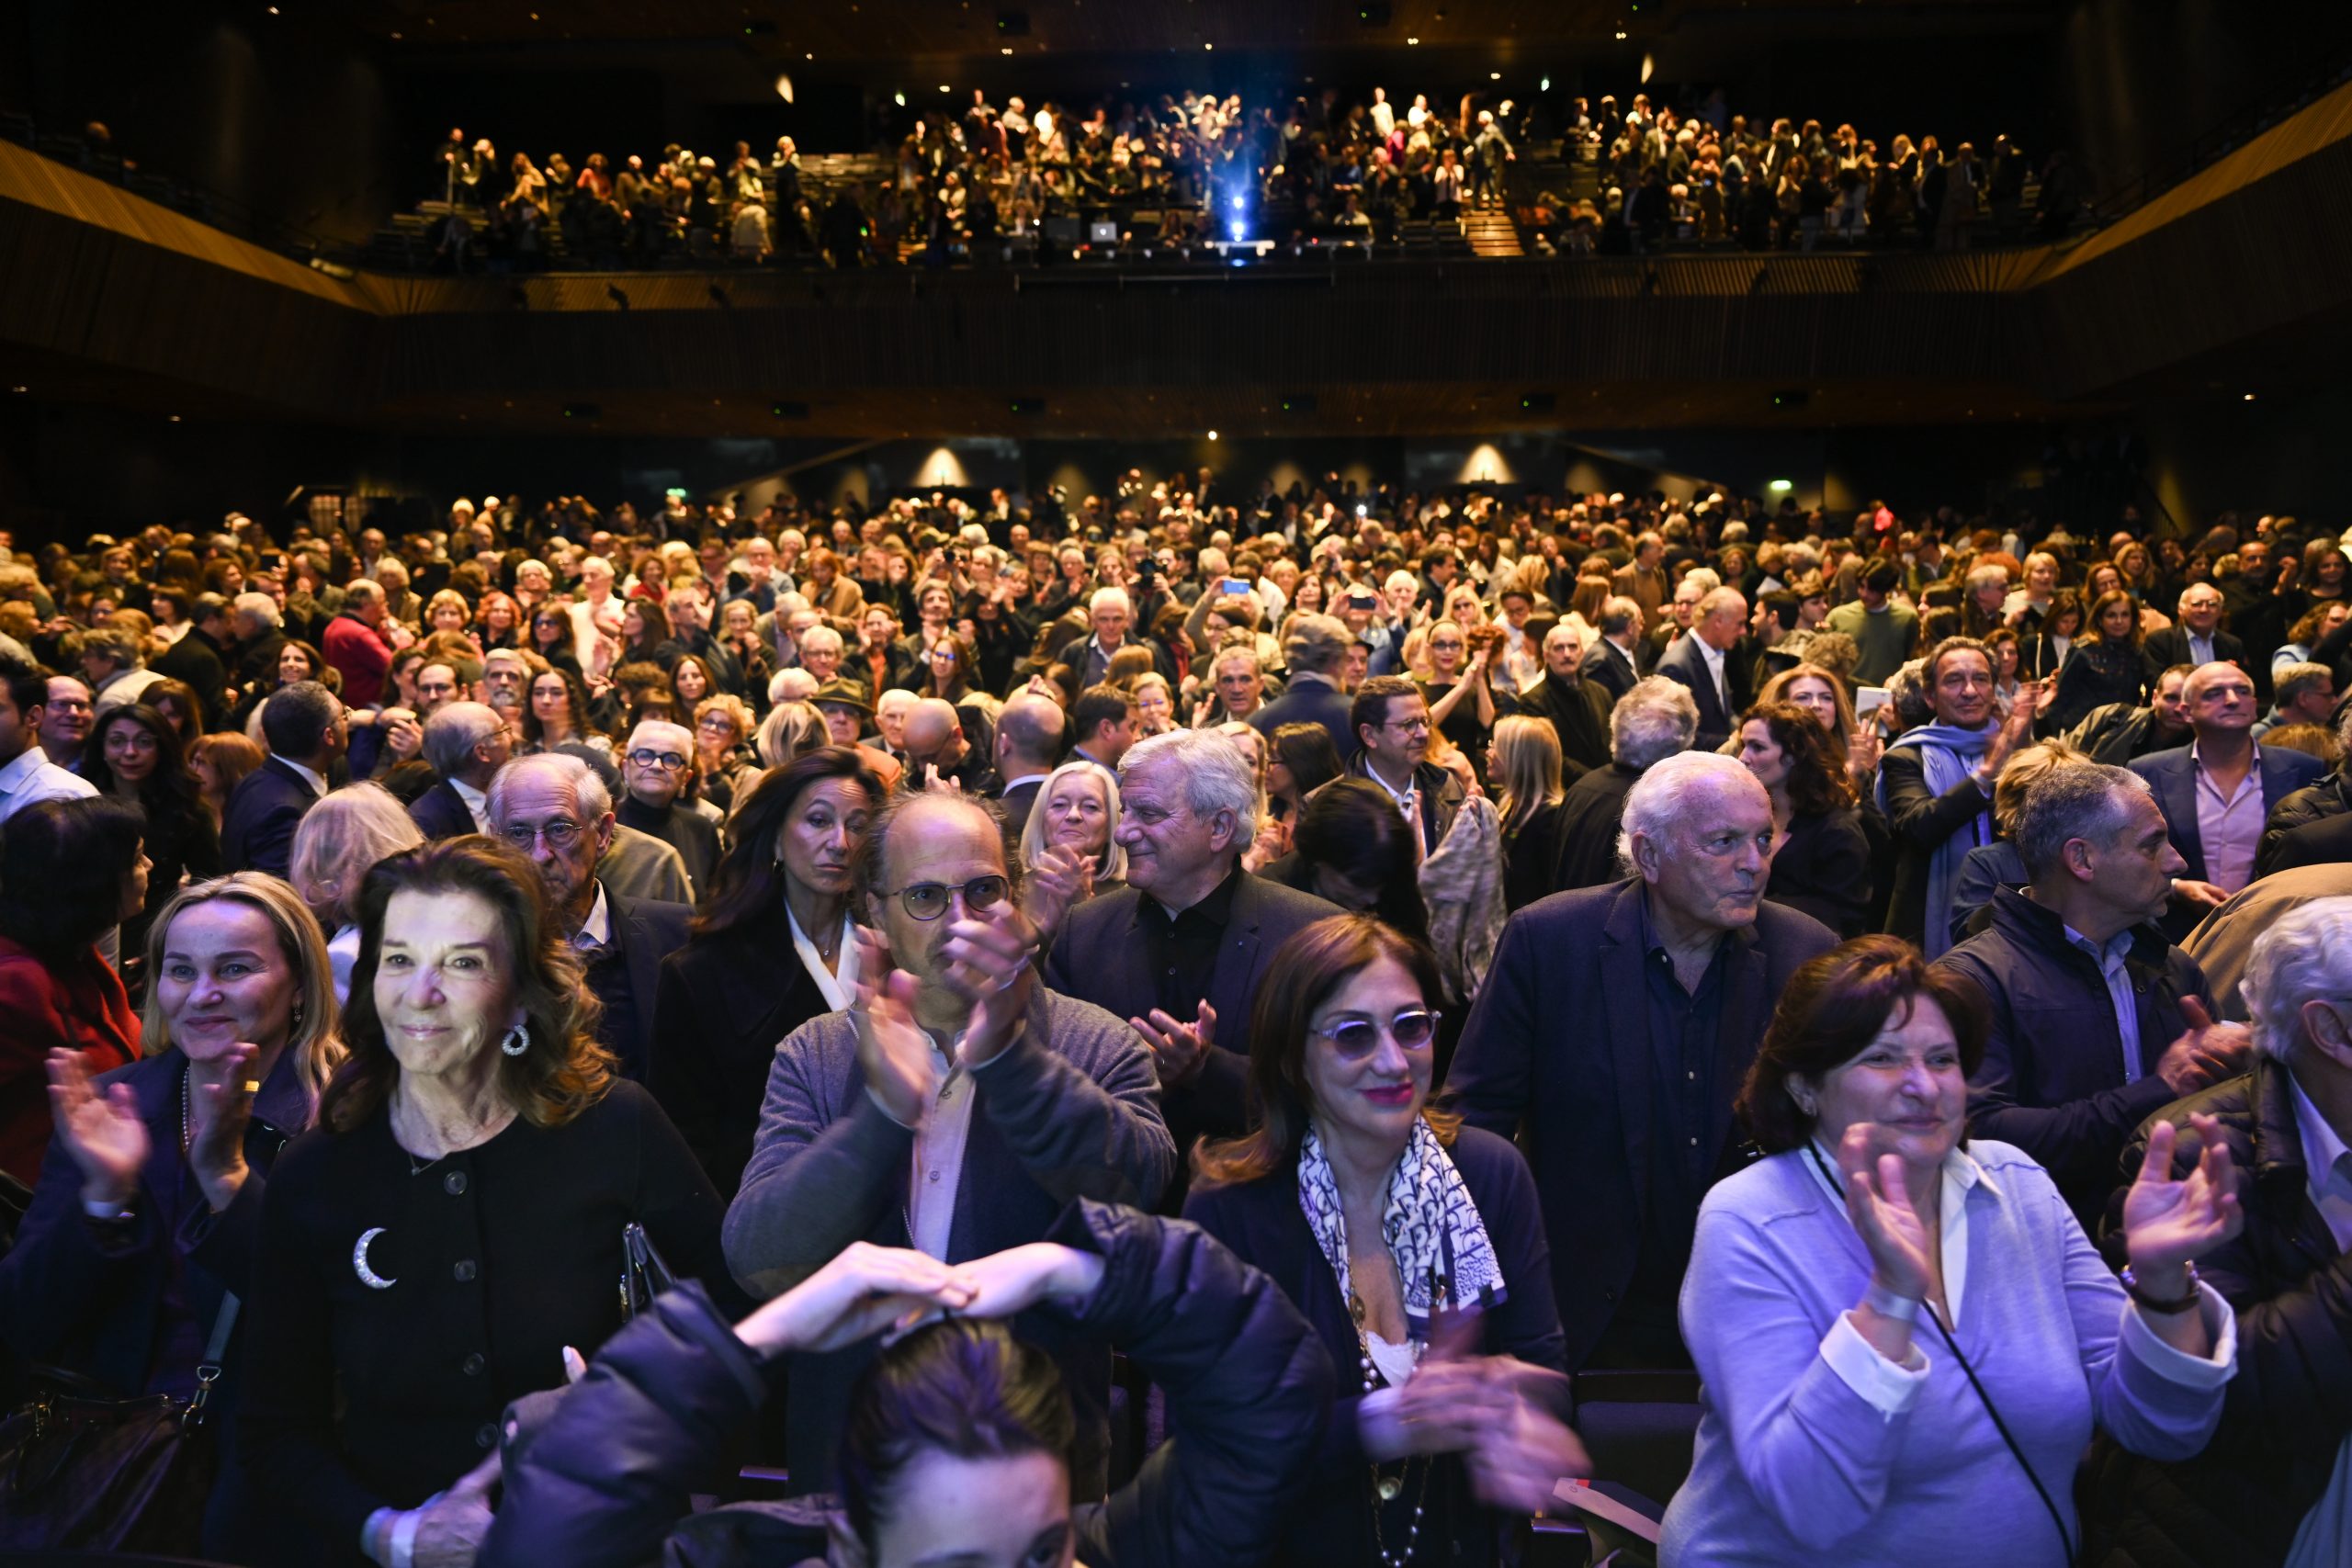 Le public de la salle Pleyel, venu assister à la grande conférence de Bernard-Henri Lévy